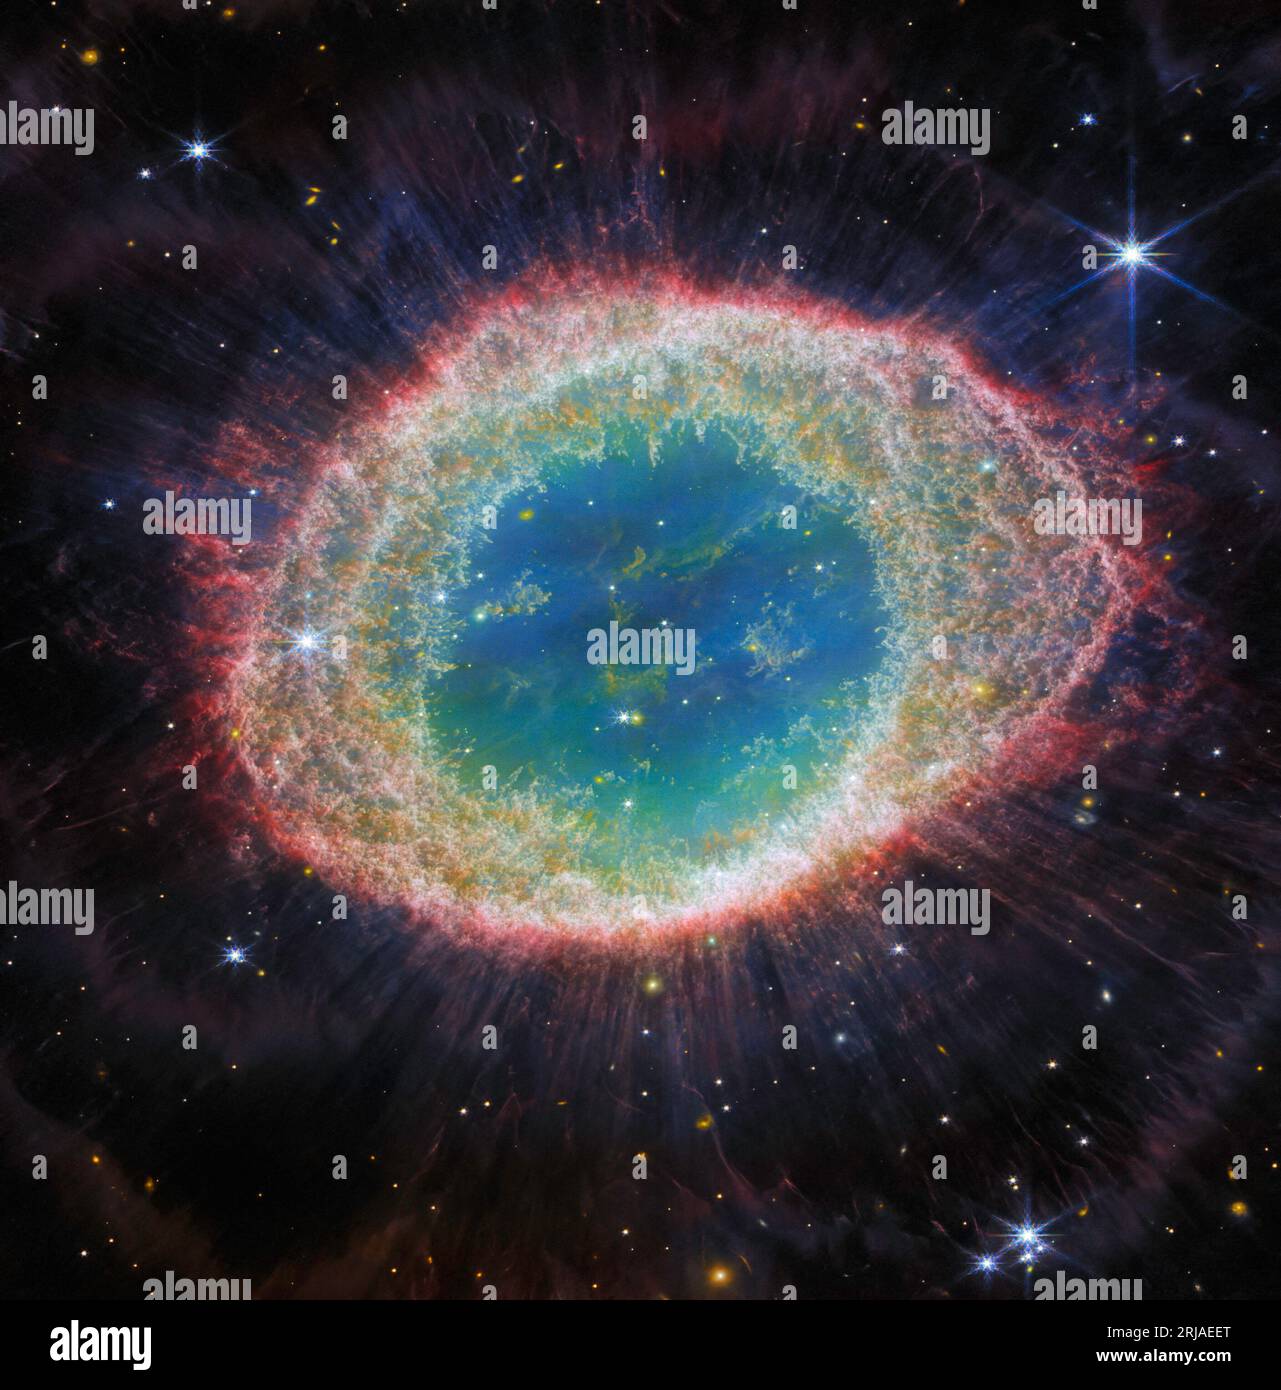 Das James Webb-Weltraumteleskop der NASA/ESA/CSA hat den bekannten Ringnebel mit beispielloser Detailgenauigkeit beobachtet. Der Ringnebel wird von einem Stern gebildet, der seine äußeren Schichten abwirft, wenn ihm der Treibstoff ausgeht. Er ist ein archetypischer Planetennebel. Auch als M57 und NGC 6720 bekannt, liegt sie beide relativ nahe an der Erde in etwa 2.500 Lichtjahren Entfernung. Dieses neue Bild bietet eine beispiellose räumliche Auflösung und spektrale Empfindlichkeit. Beispielsweise sind die komplizierten Details der Filamentstruktur des inneren Rings in diesem Datensatz besonders sichtbar. Es gibt etwa 20.000 dichte Kügelchen im Nebel, was a Stockfoto